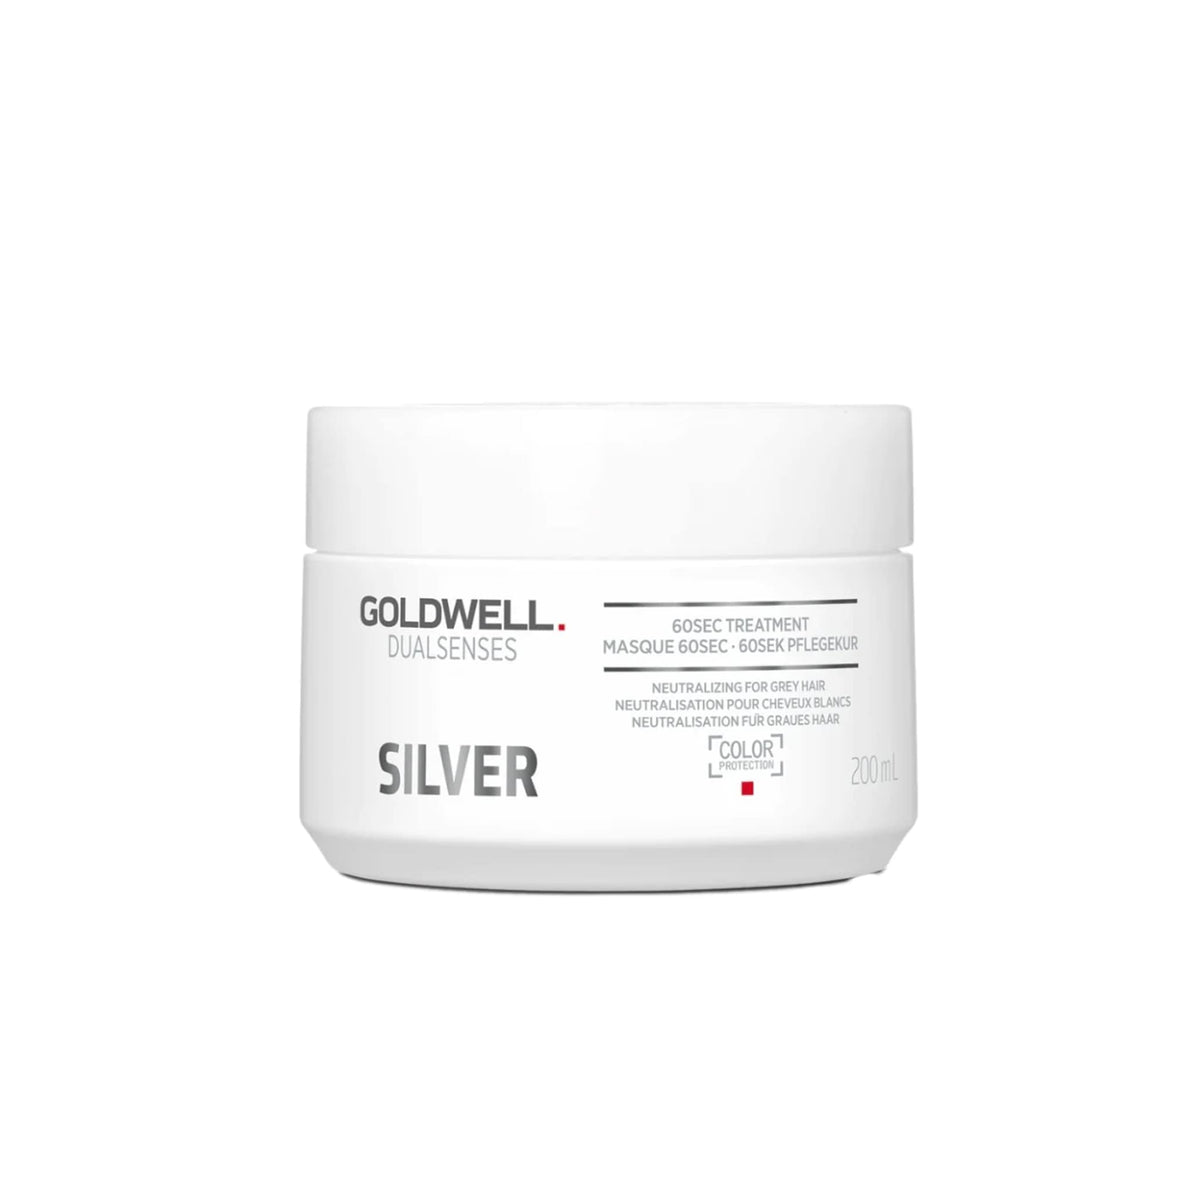 Goldwell Dual Sense Silver 60Sec Treatment 200ml